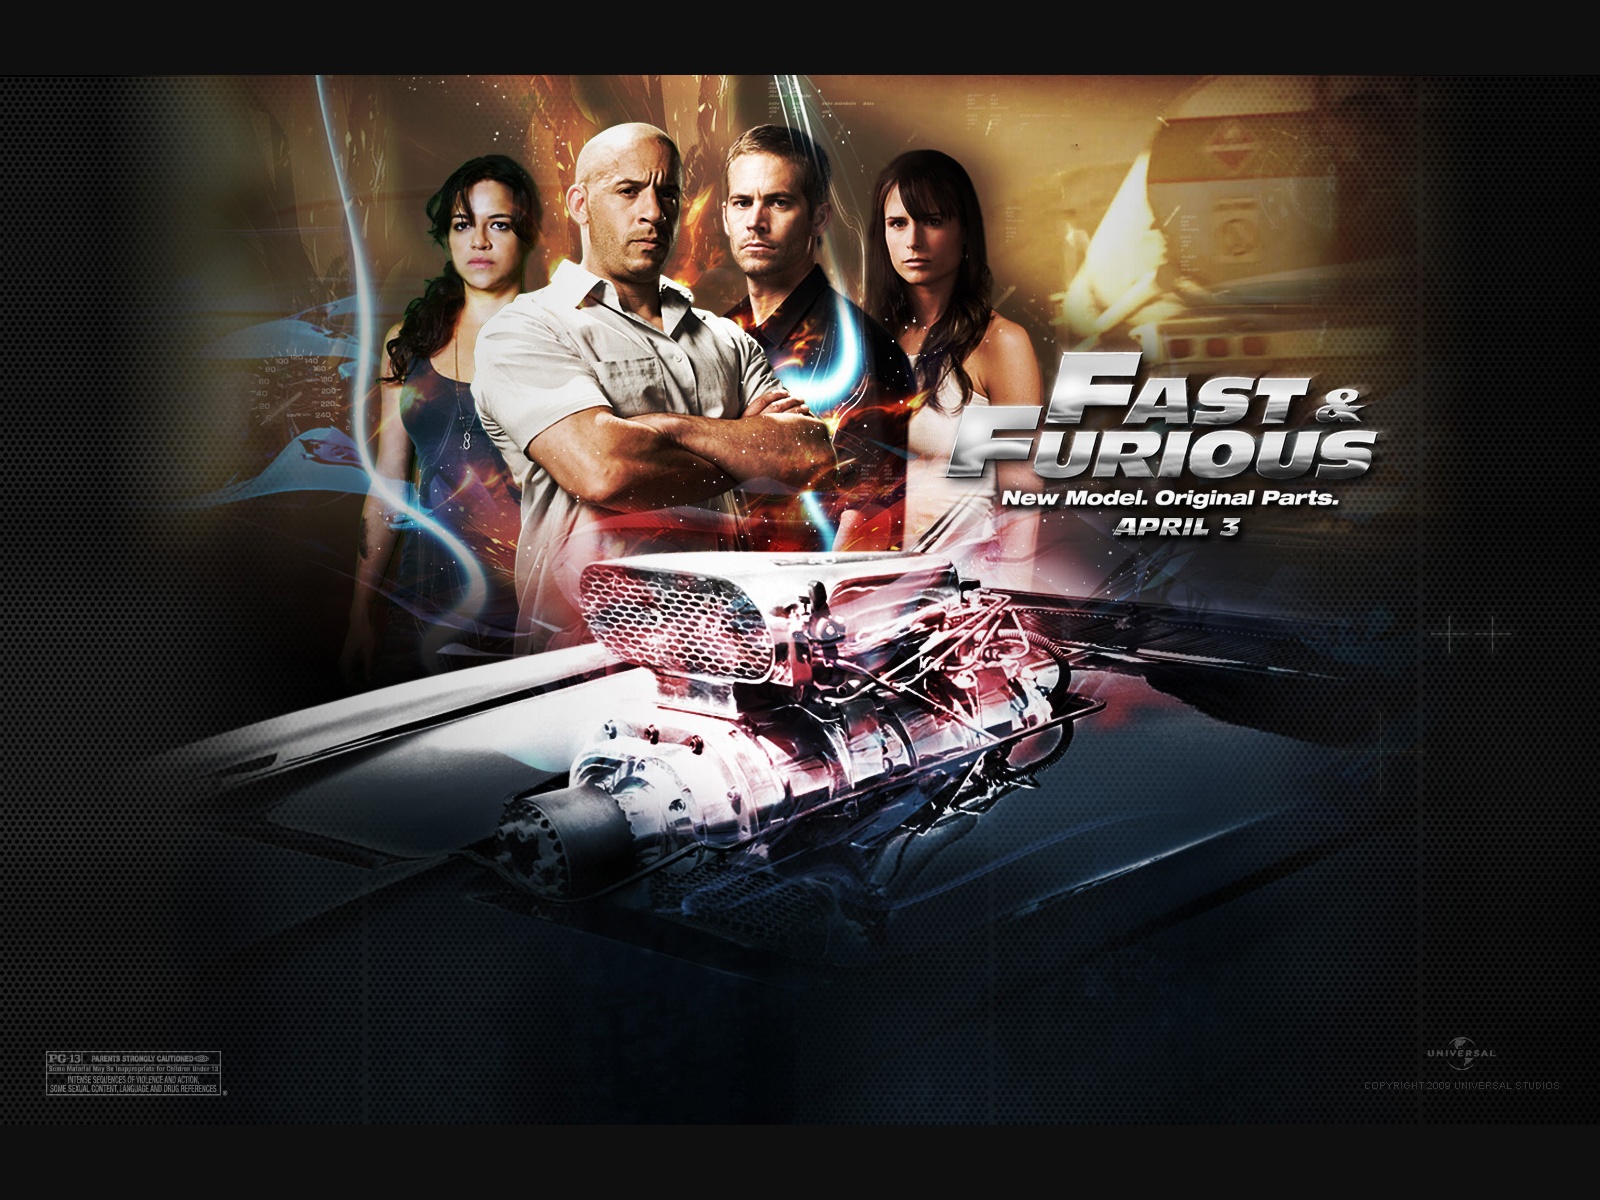 "Fast & Furious" desktop wallpaper (1600 x 1200 pixels)